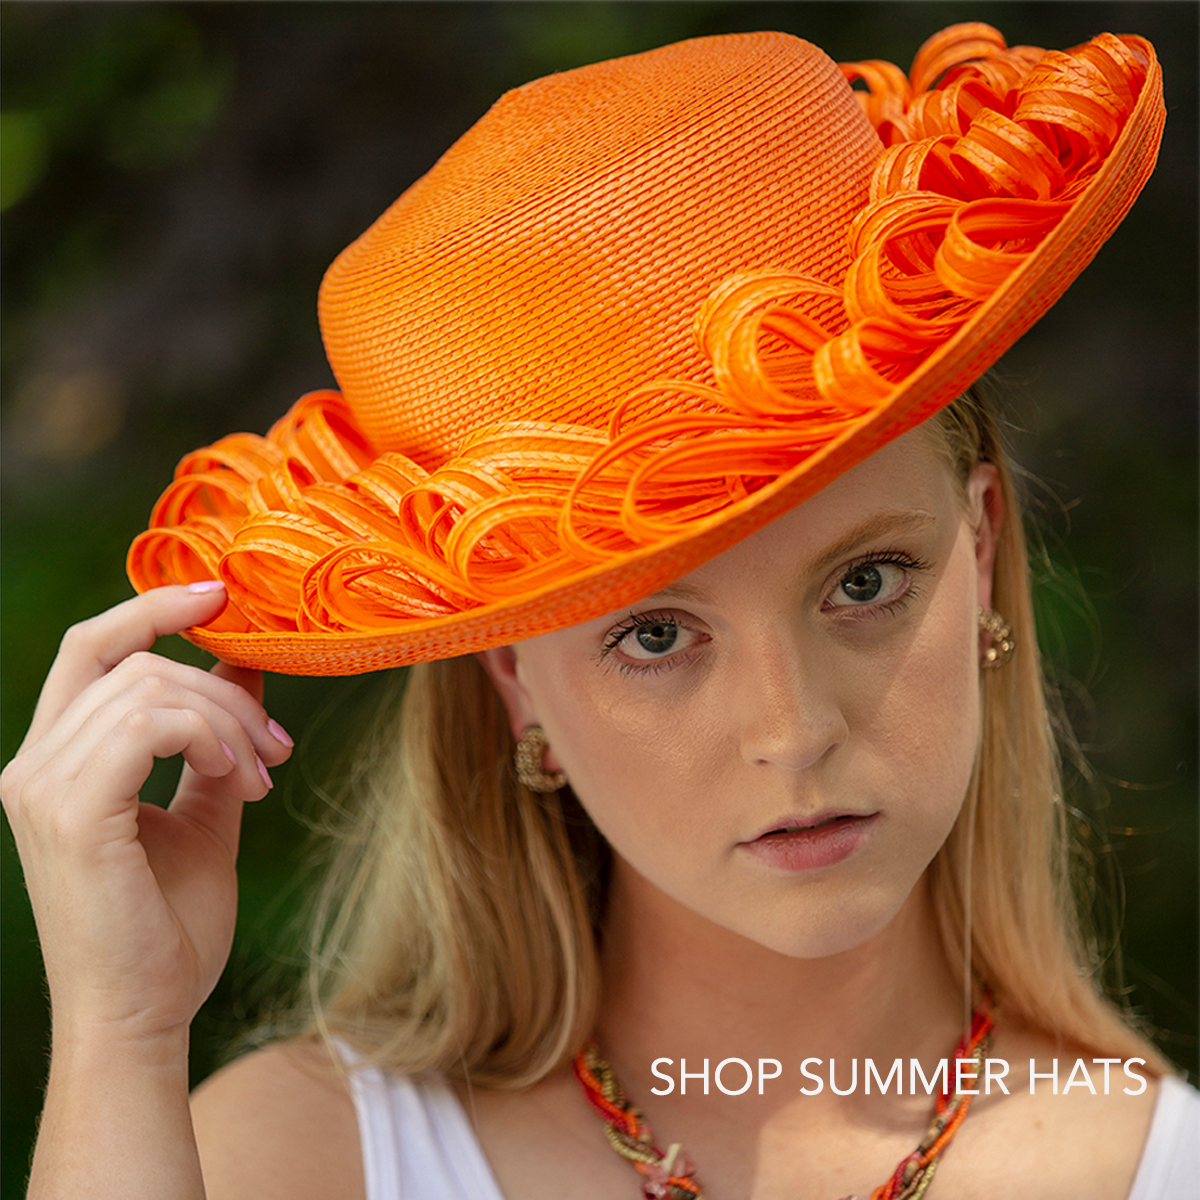 Shop vintage summer hats